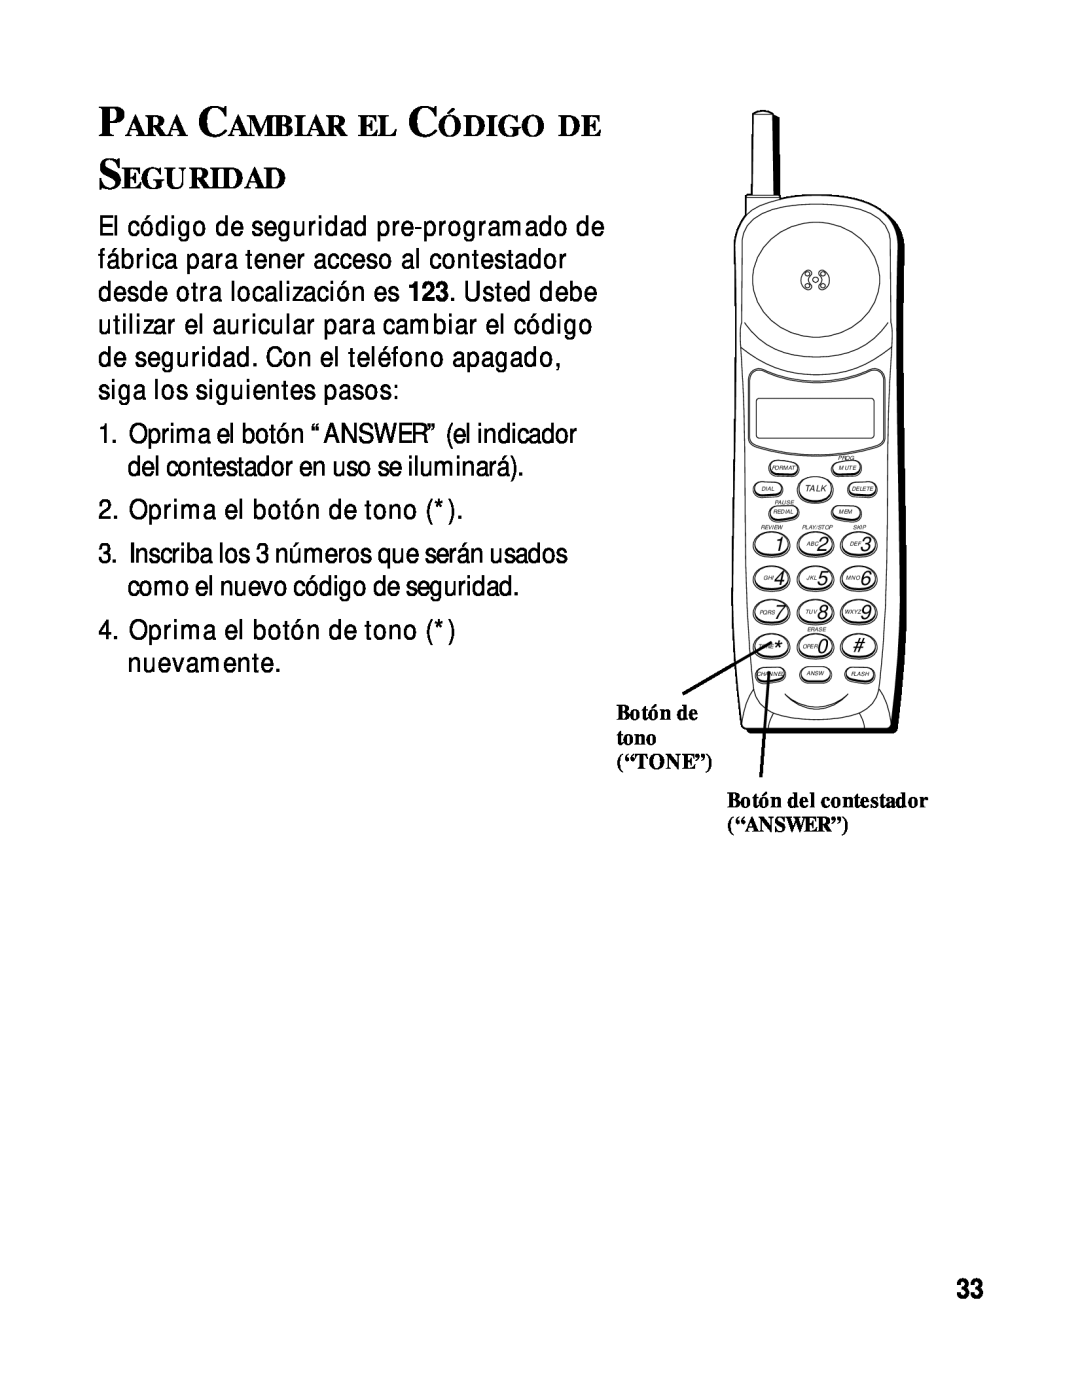 RCA 900 MHz manual Para Cambiar El Código De Seguridad 